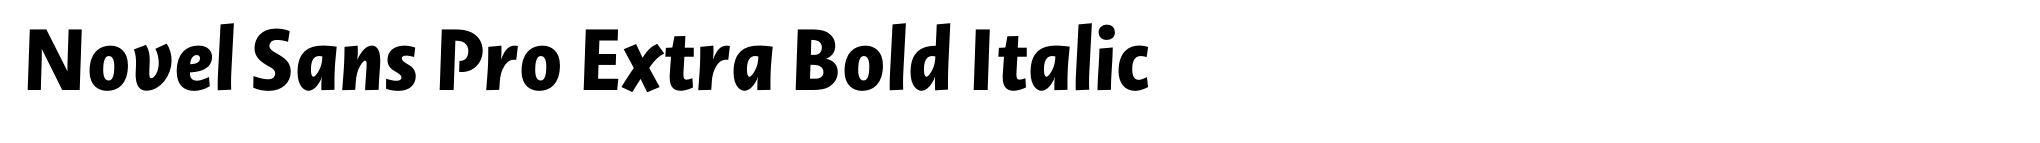 Novel Sans Pro Extra Bold Italic image